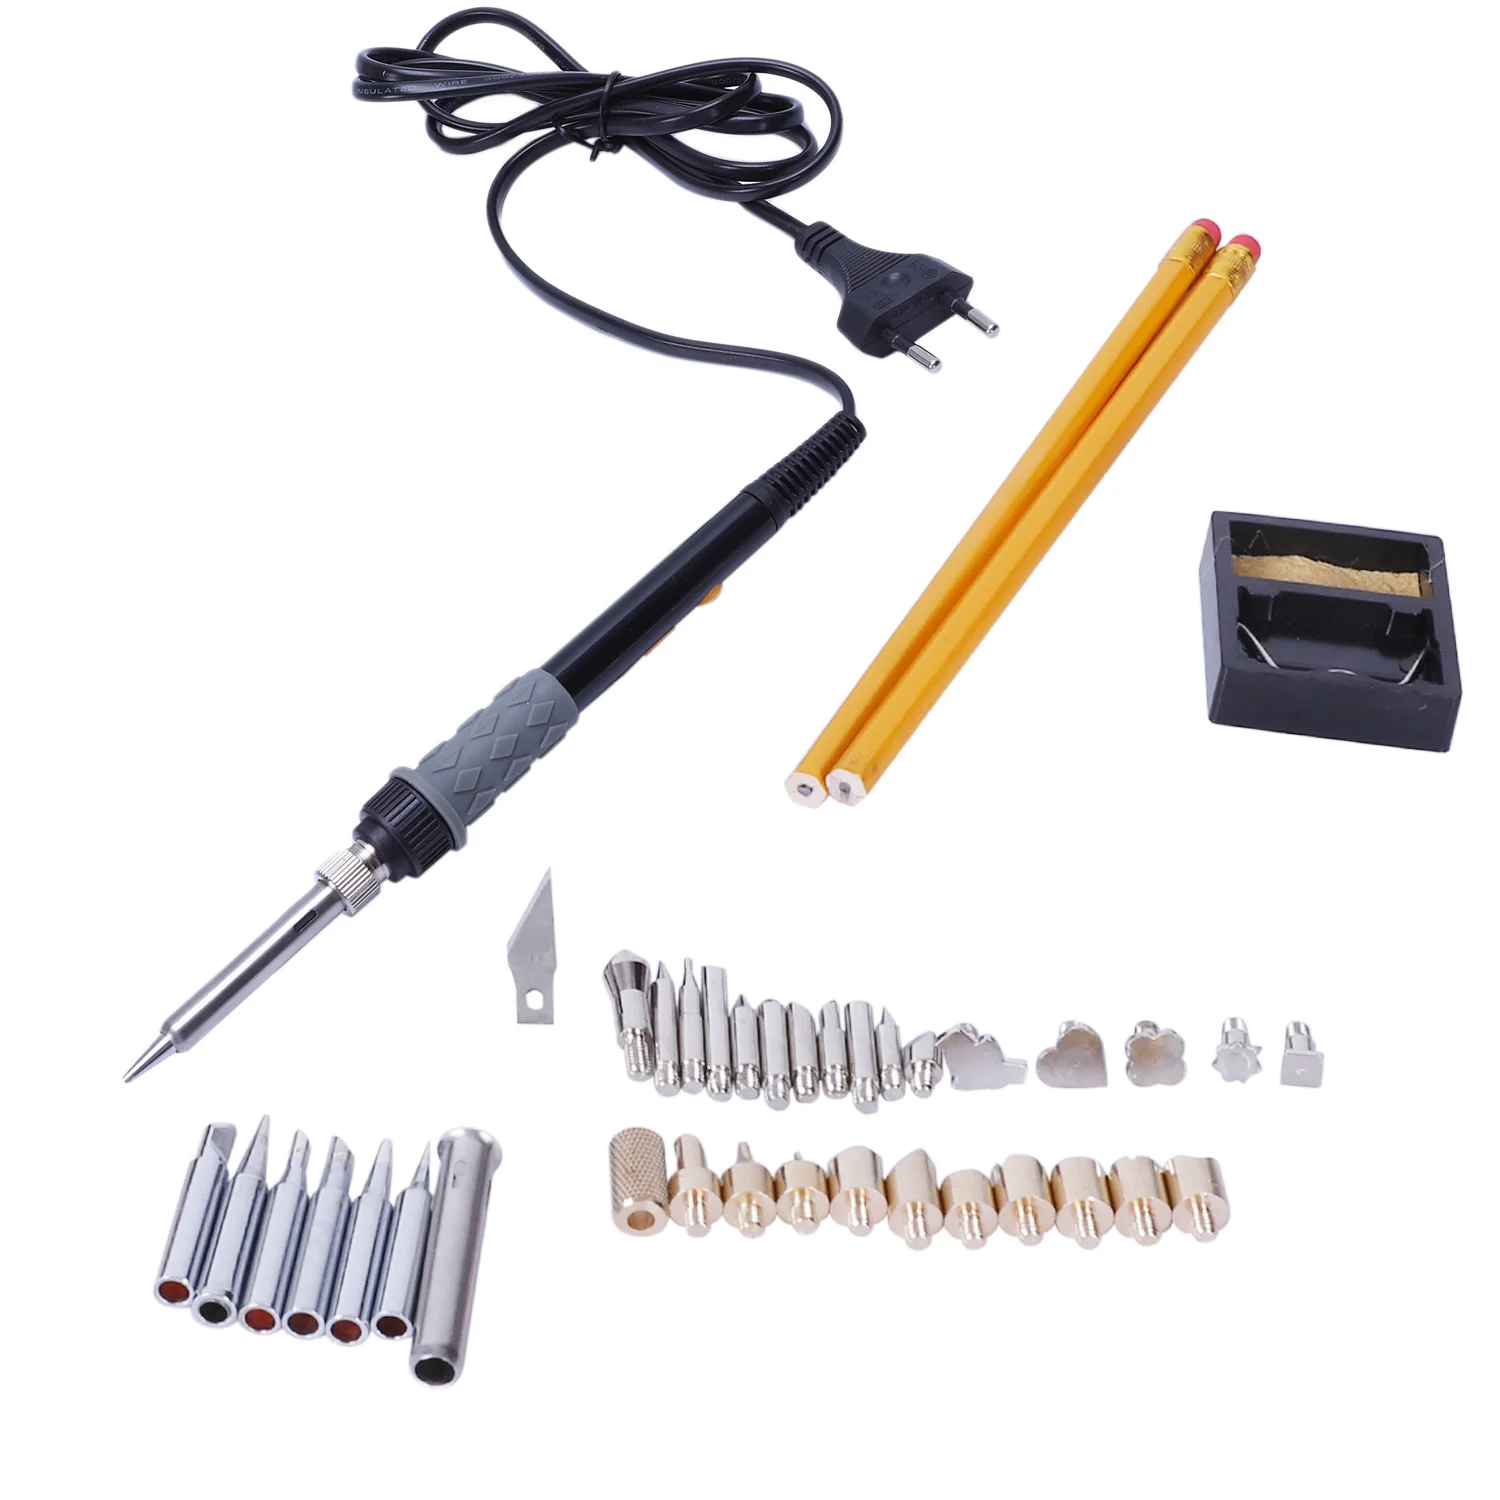 Hot-Eu Plug Wood комплект для выжигания, 46 Pcs Professional Pyrography Pen Set 60 W/110 V Температура Регулируемая ВКЛ-ВЫКЛ инструмент